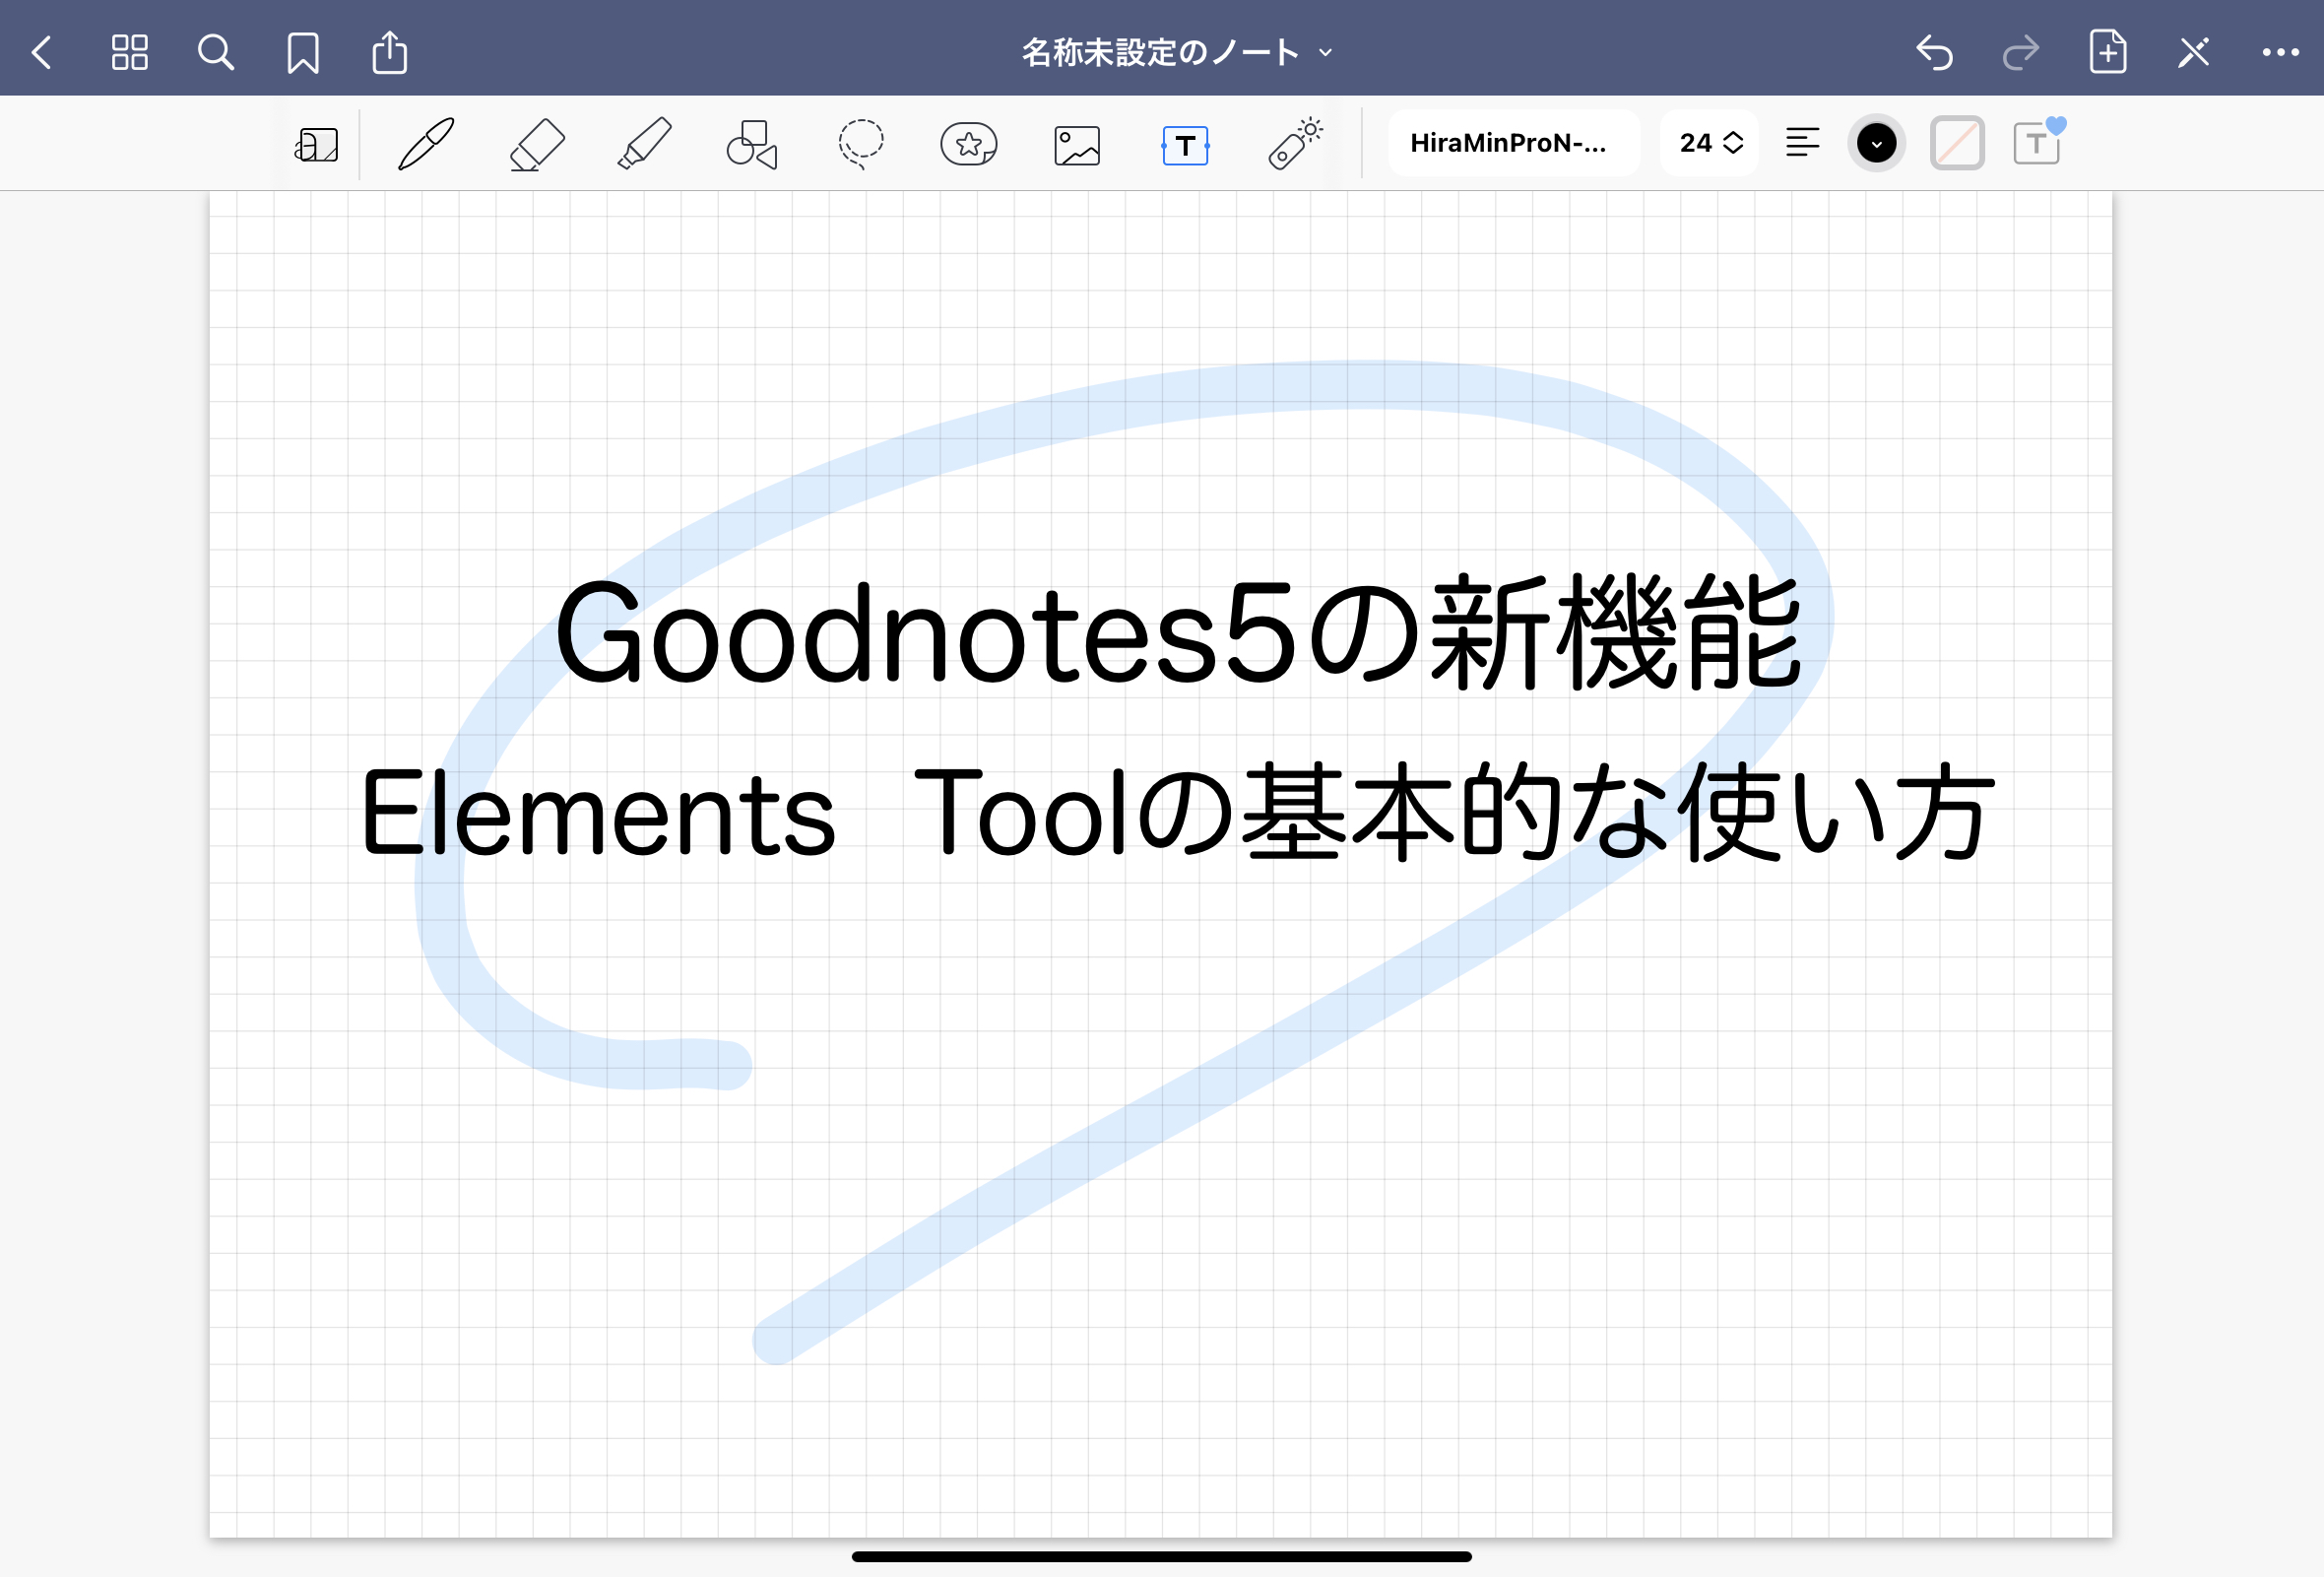 Goodnotes5の新機能Elements  Toolの基本的な使い方 